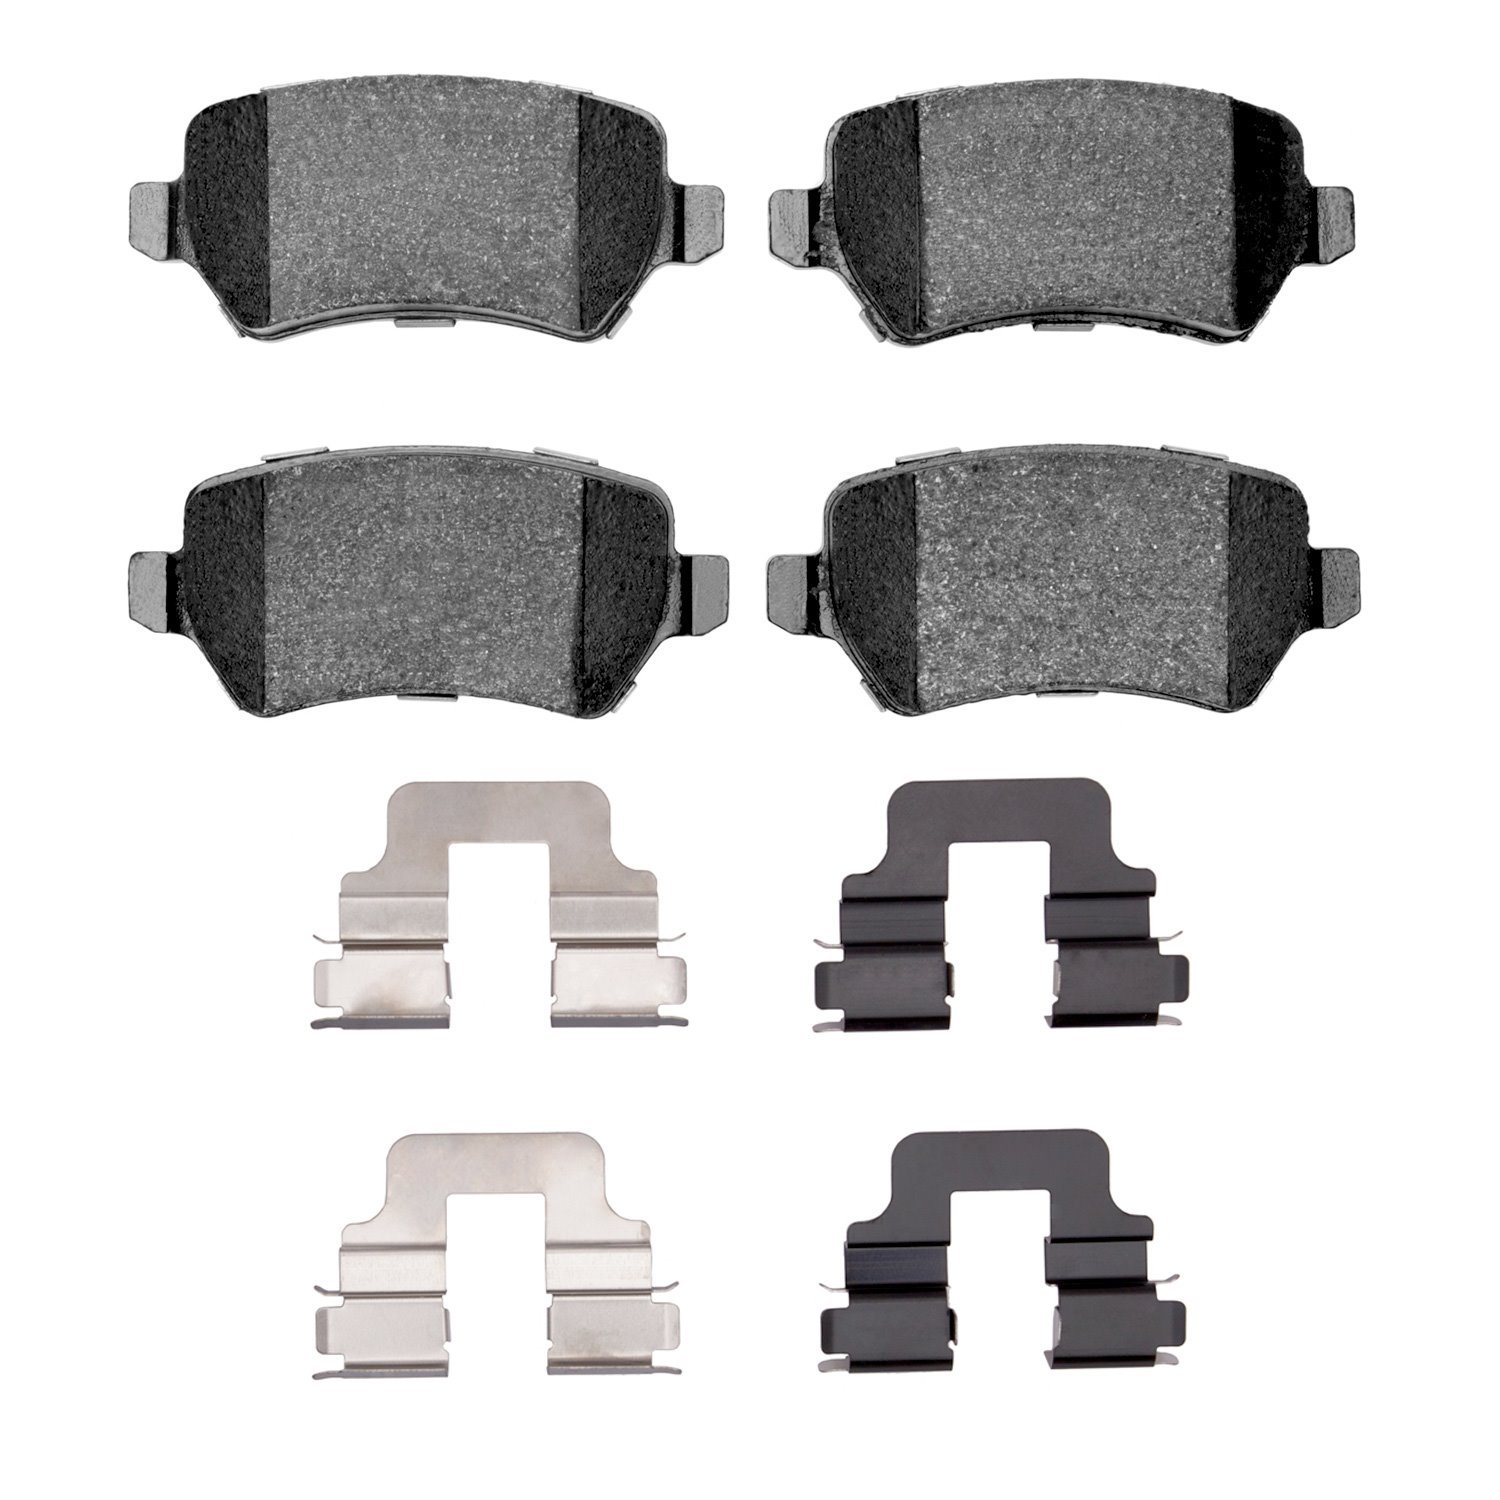 1310-1362-01 3000-Series Ceramic Brake Pads & Hardware Kit, 2002-2008 GM, Position: Rear